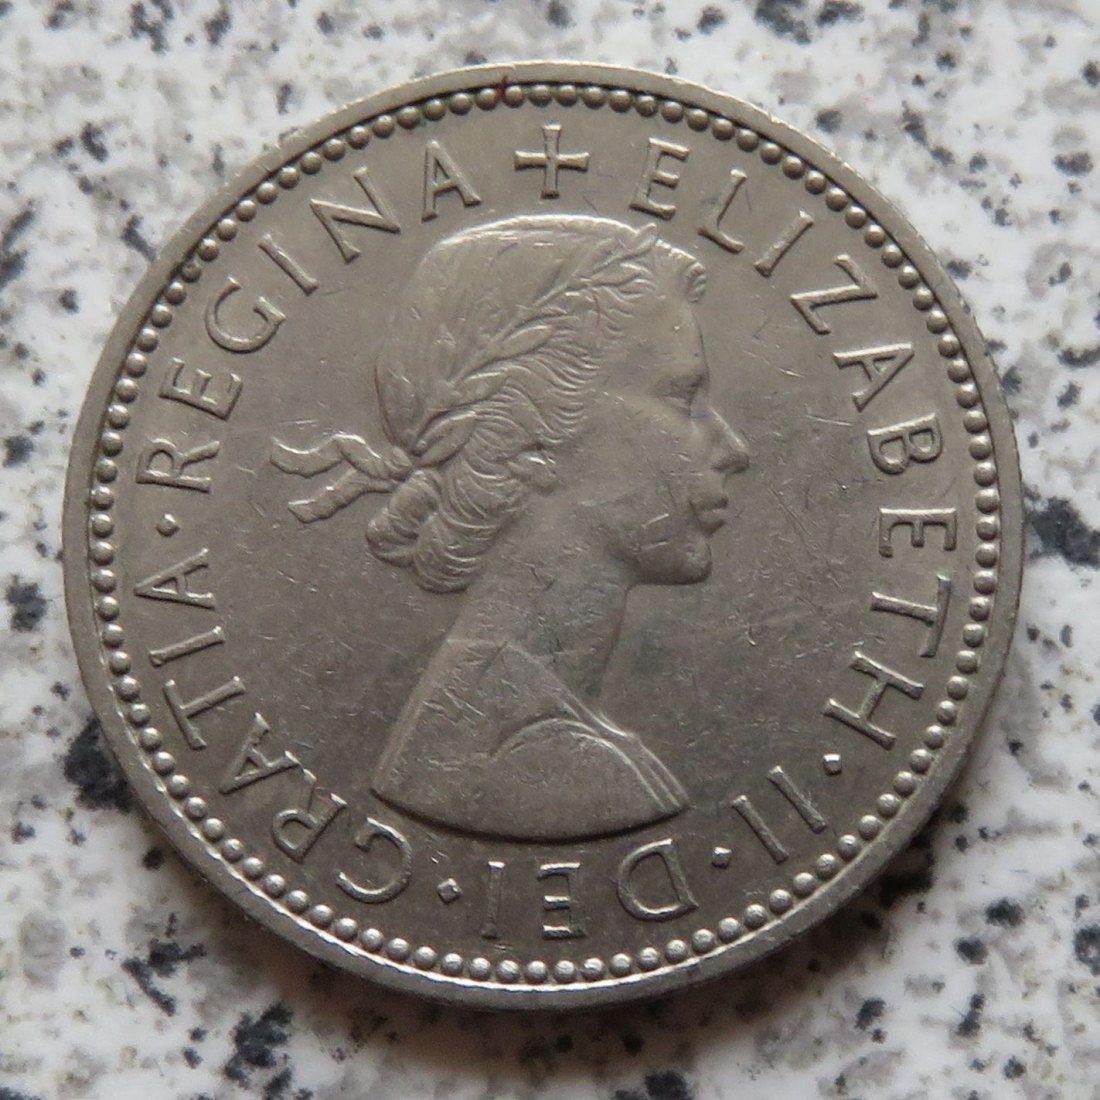  Großbritannien 1 Shilling 1959, Schottisch   